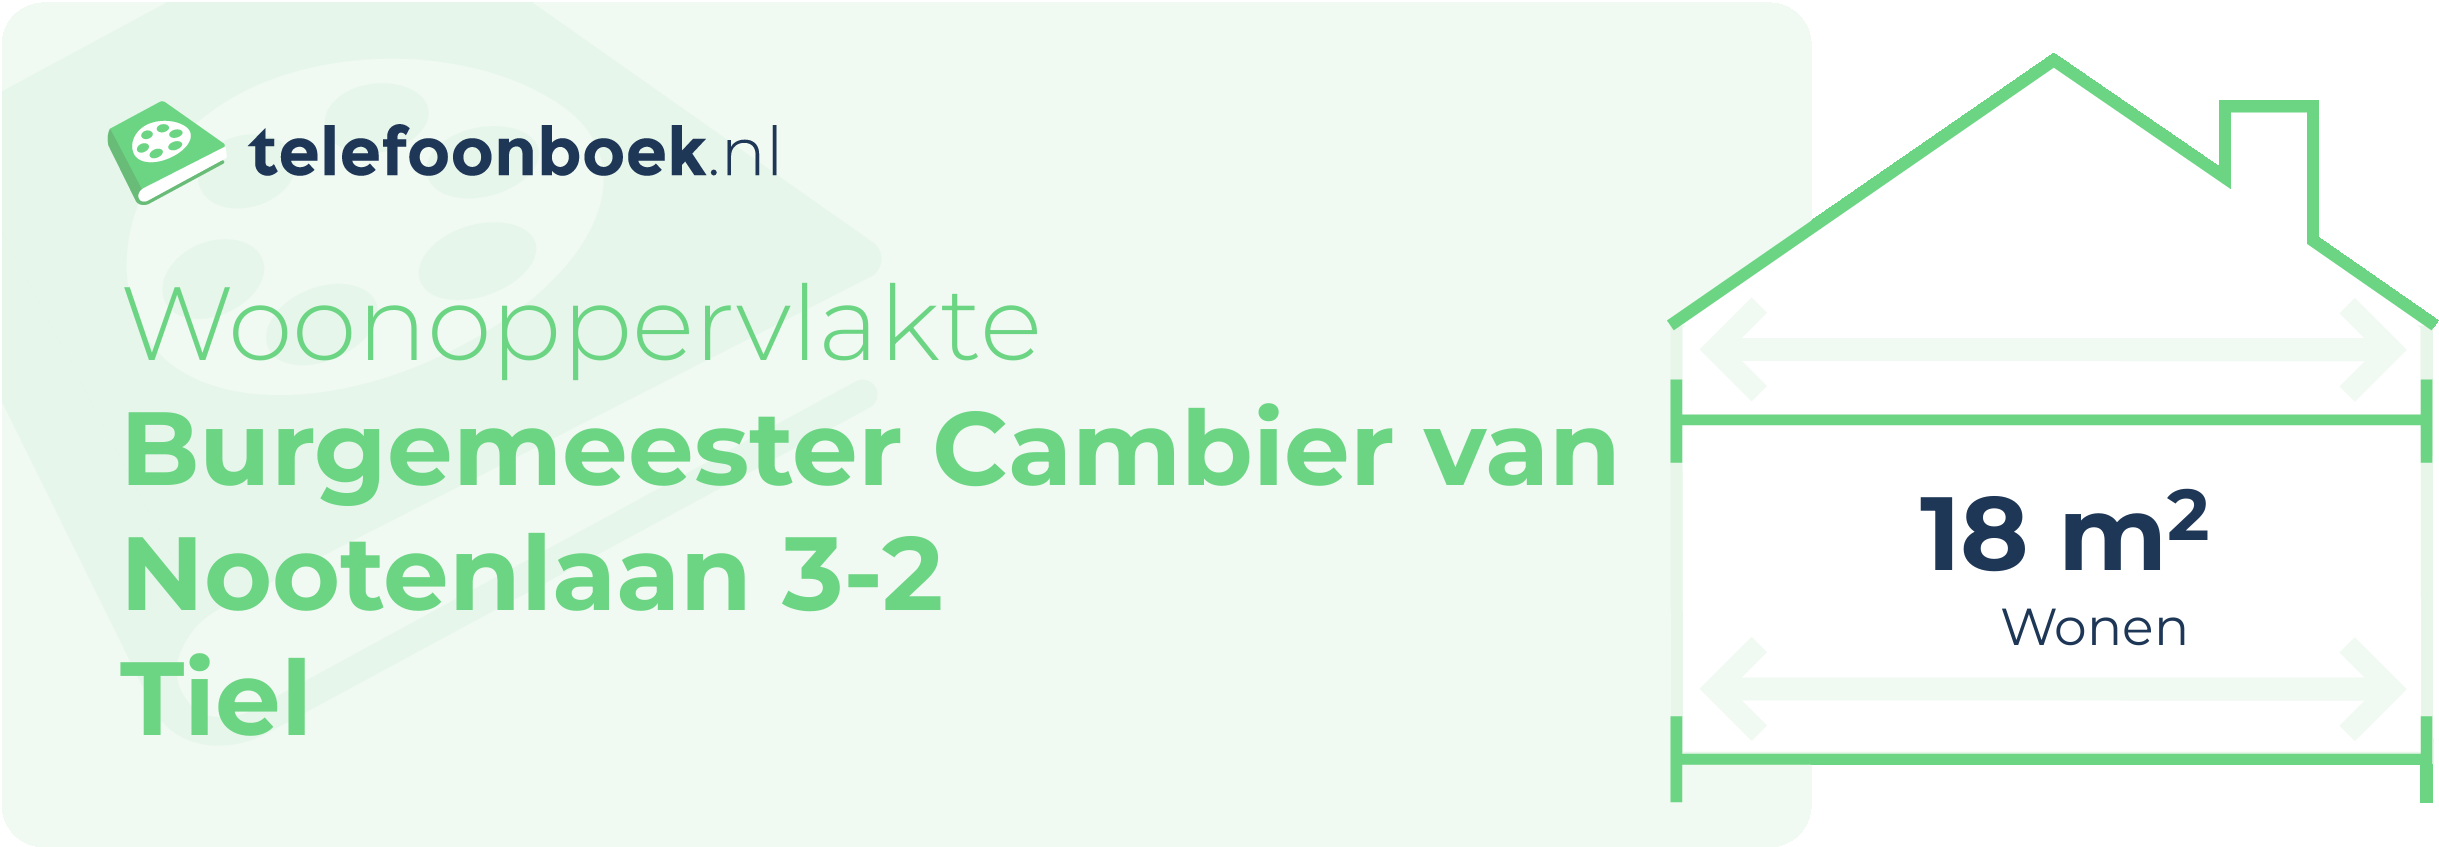 Woonoppervlakte Burgemeester Cambier Van Nootenlaan 3-2 Tiel